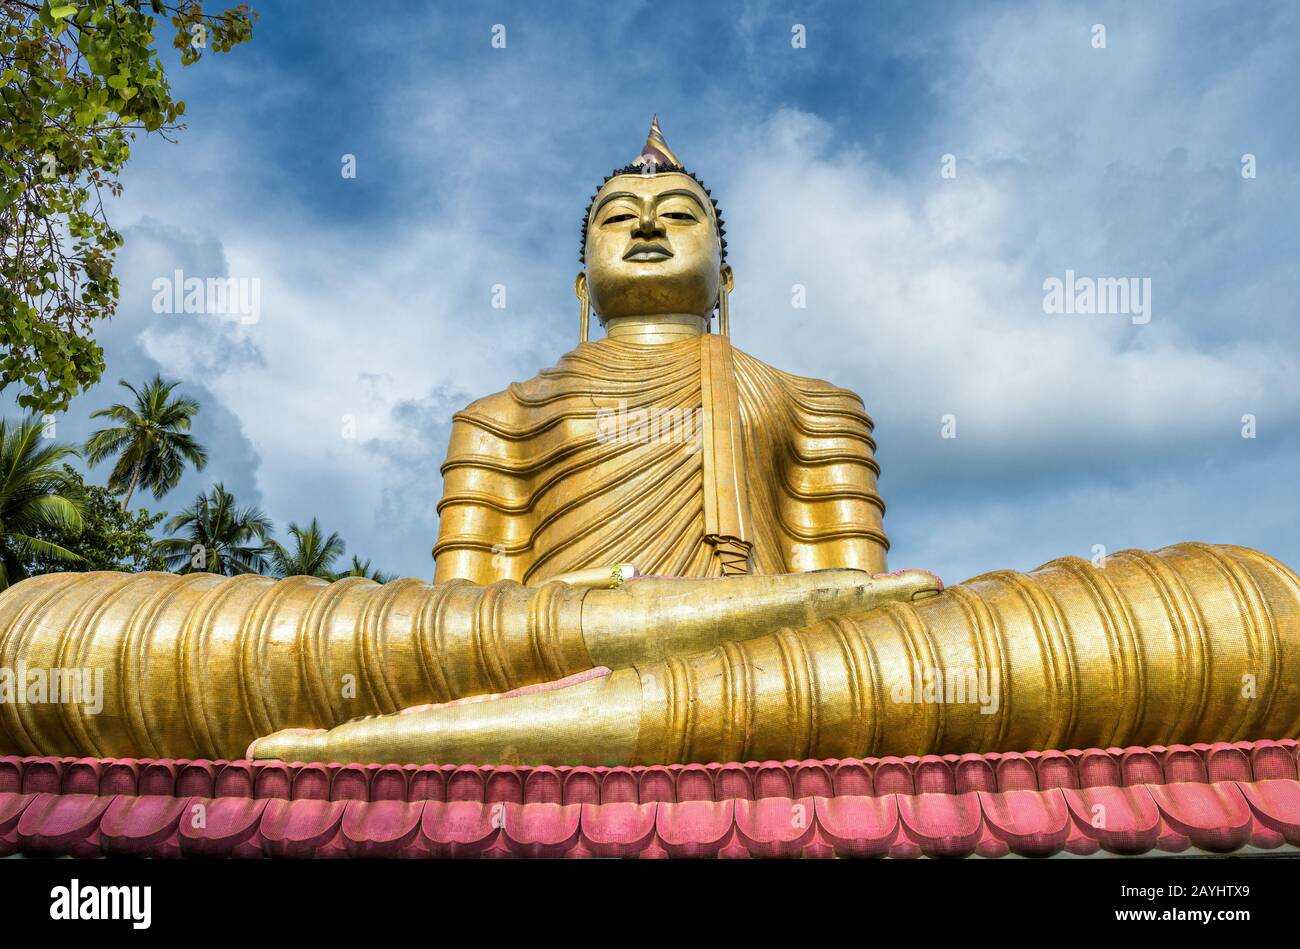 Grand Bouddha dans le vieux temple de Wewurukannala Vihara dans la ville de Dickwella, Sri Lanka. Une statue de Bouddha assis de 50 m de haut est la plus grande du Sri Lanka. Bonjour Banque D'Images